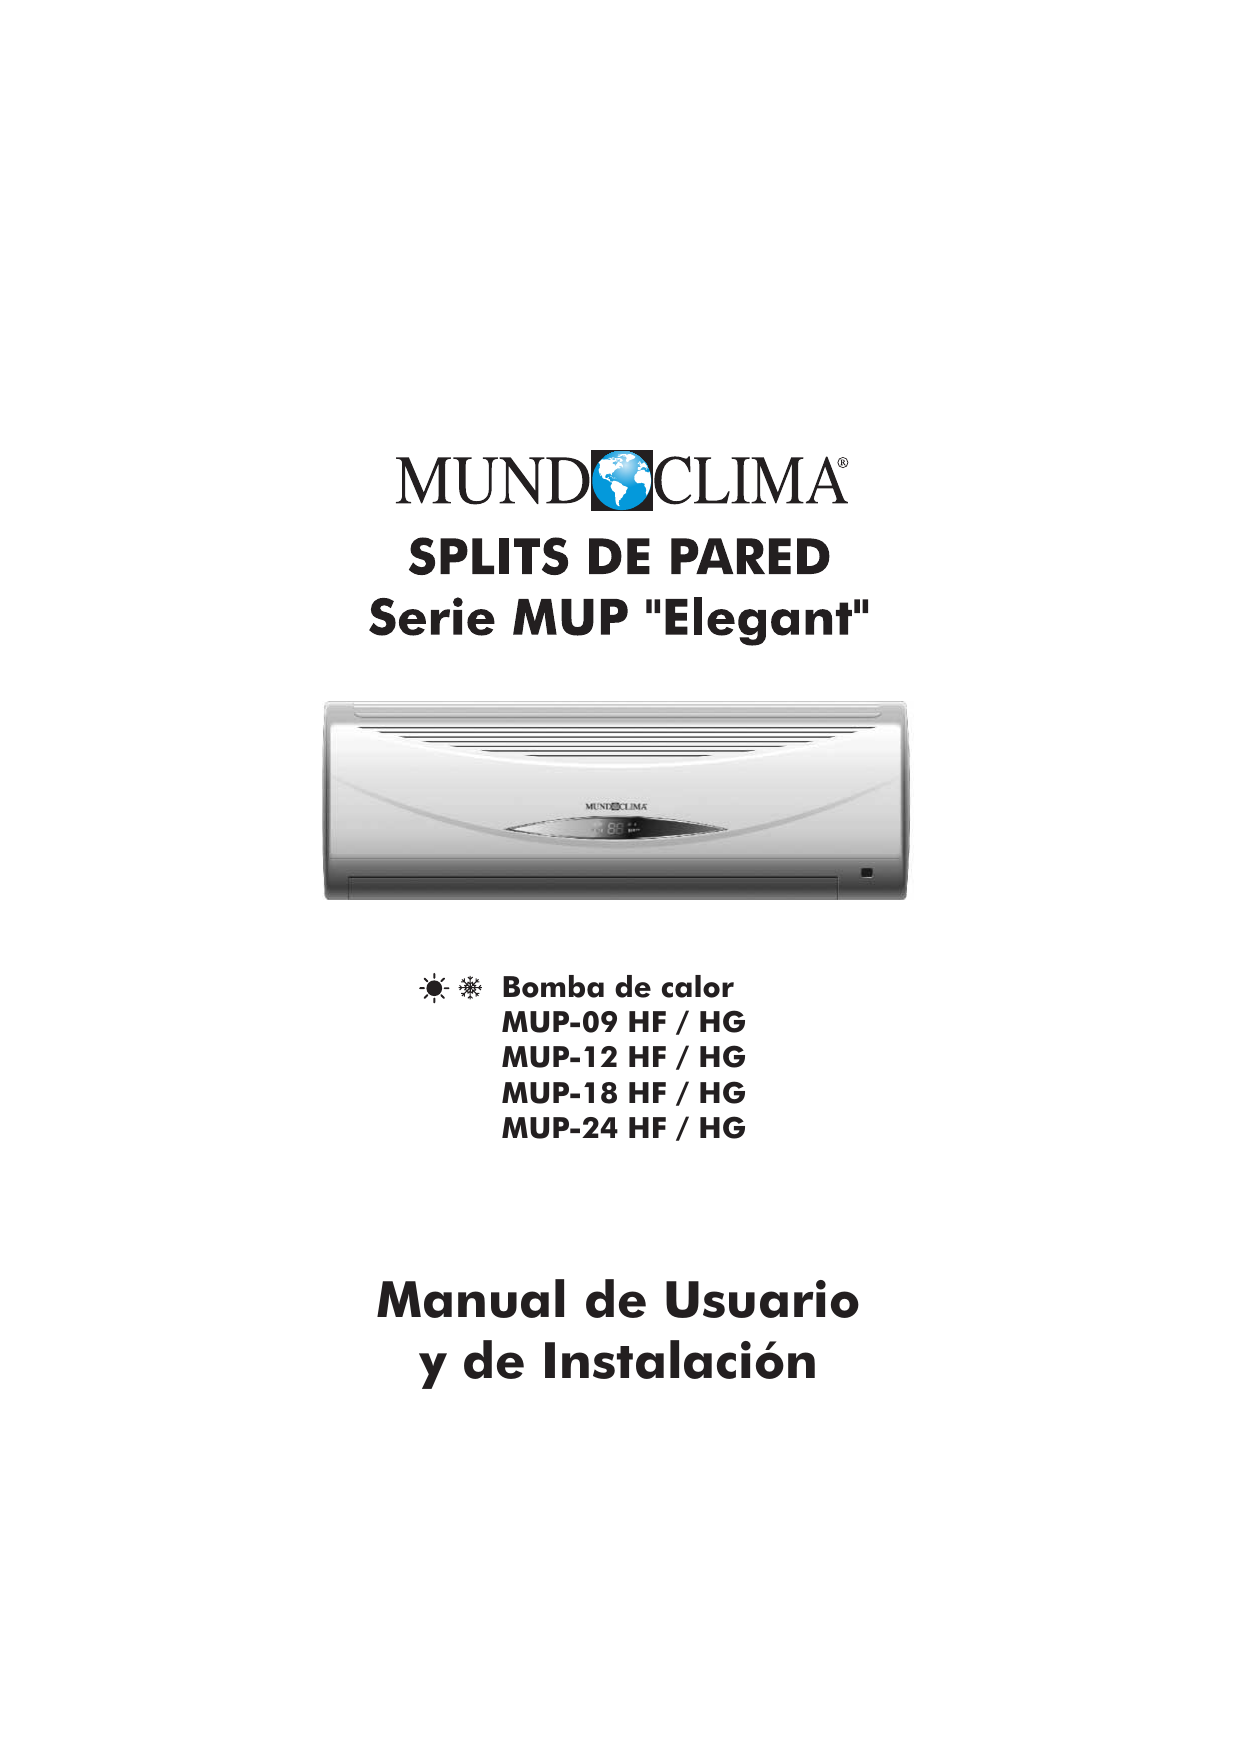 Series MUCR-HF “Duct Inverter HF ”